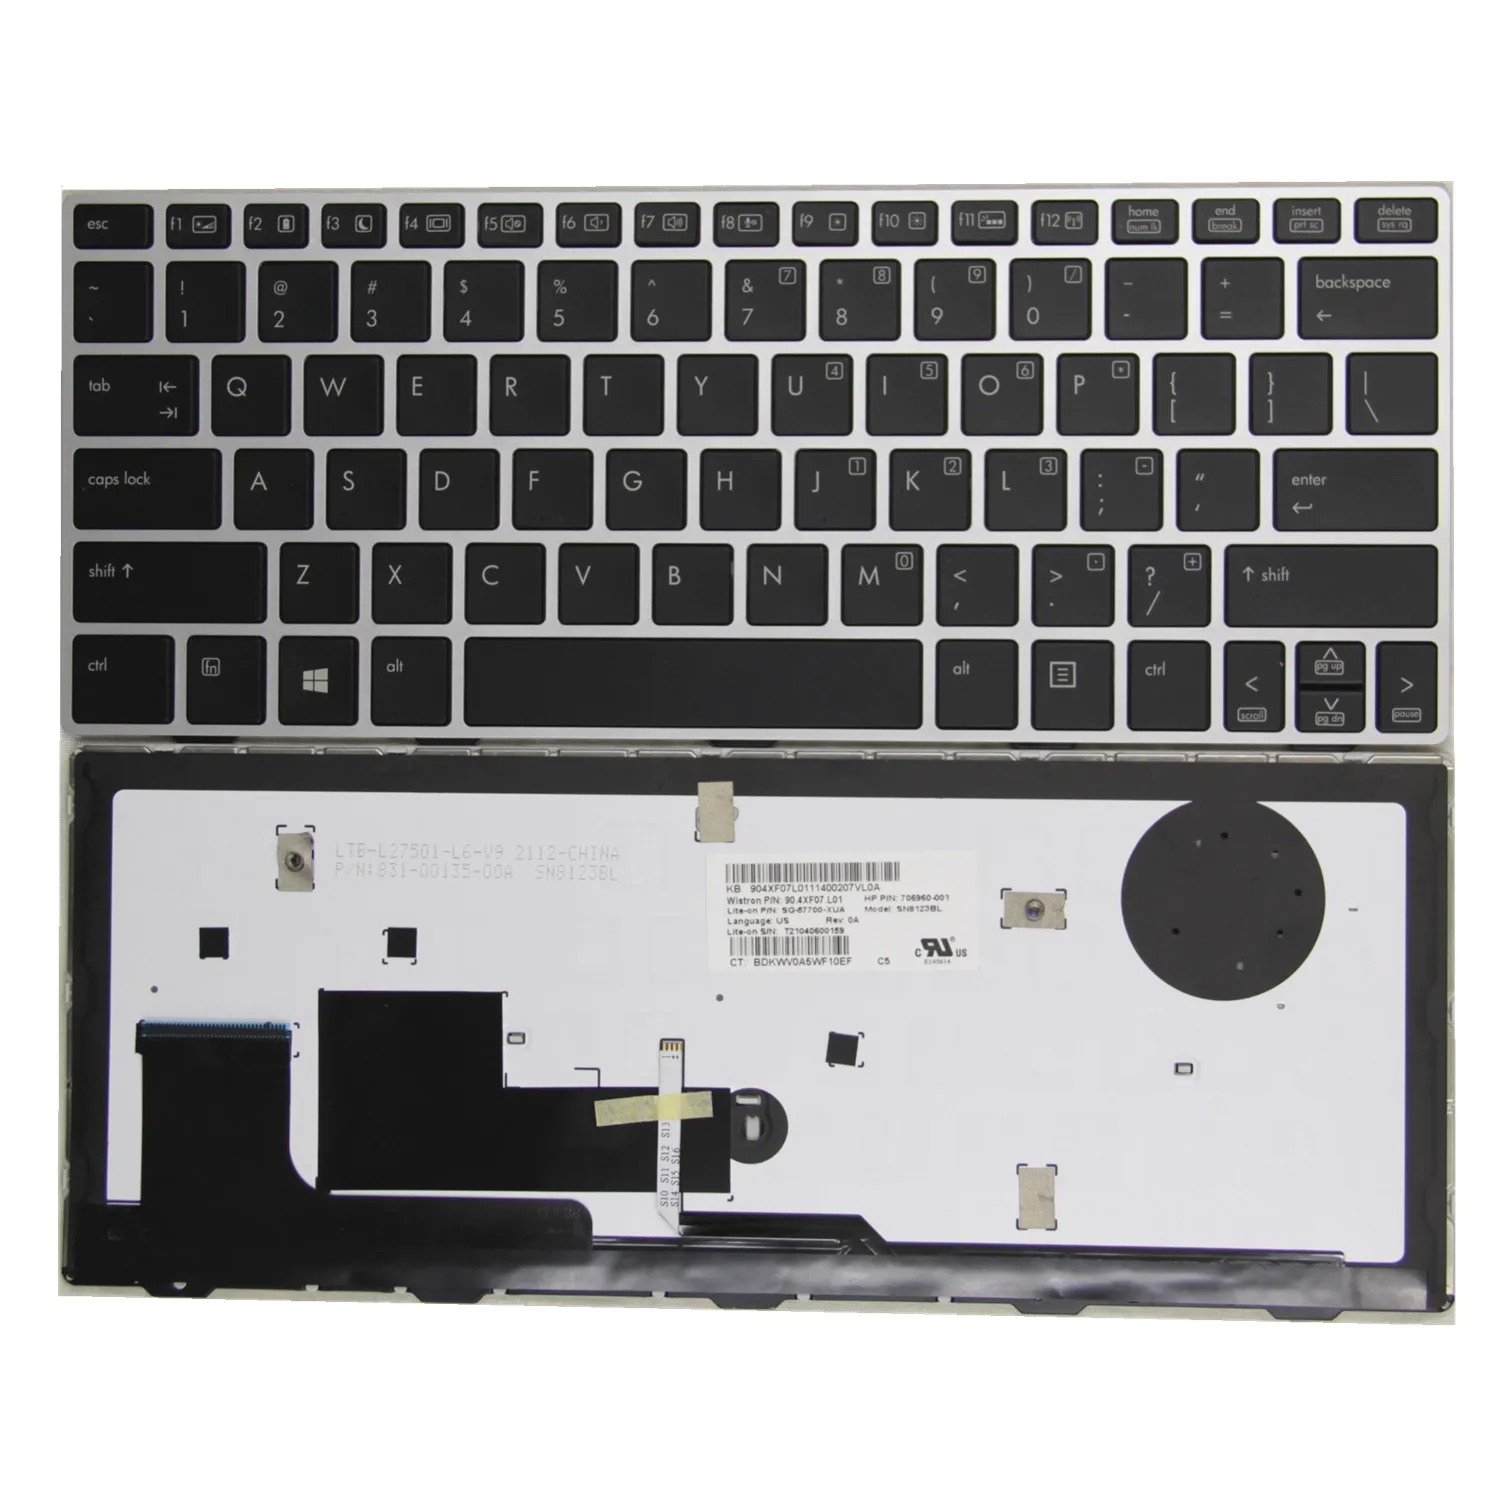 

Оригинальная 100% новая английская клавиатура для ноутбука HP EliteBook поверните 810 G1 810 G2 810 G3 с серебристой рамкой и подсветкой 706960-001